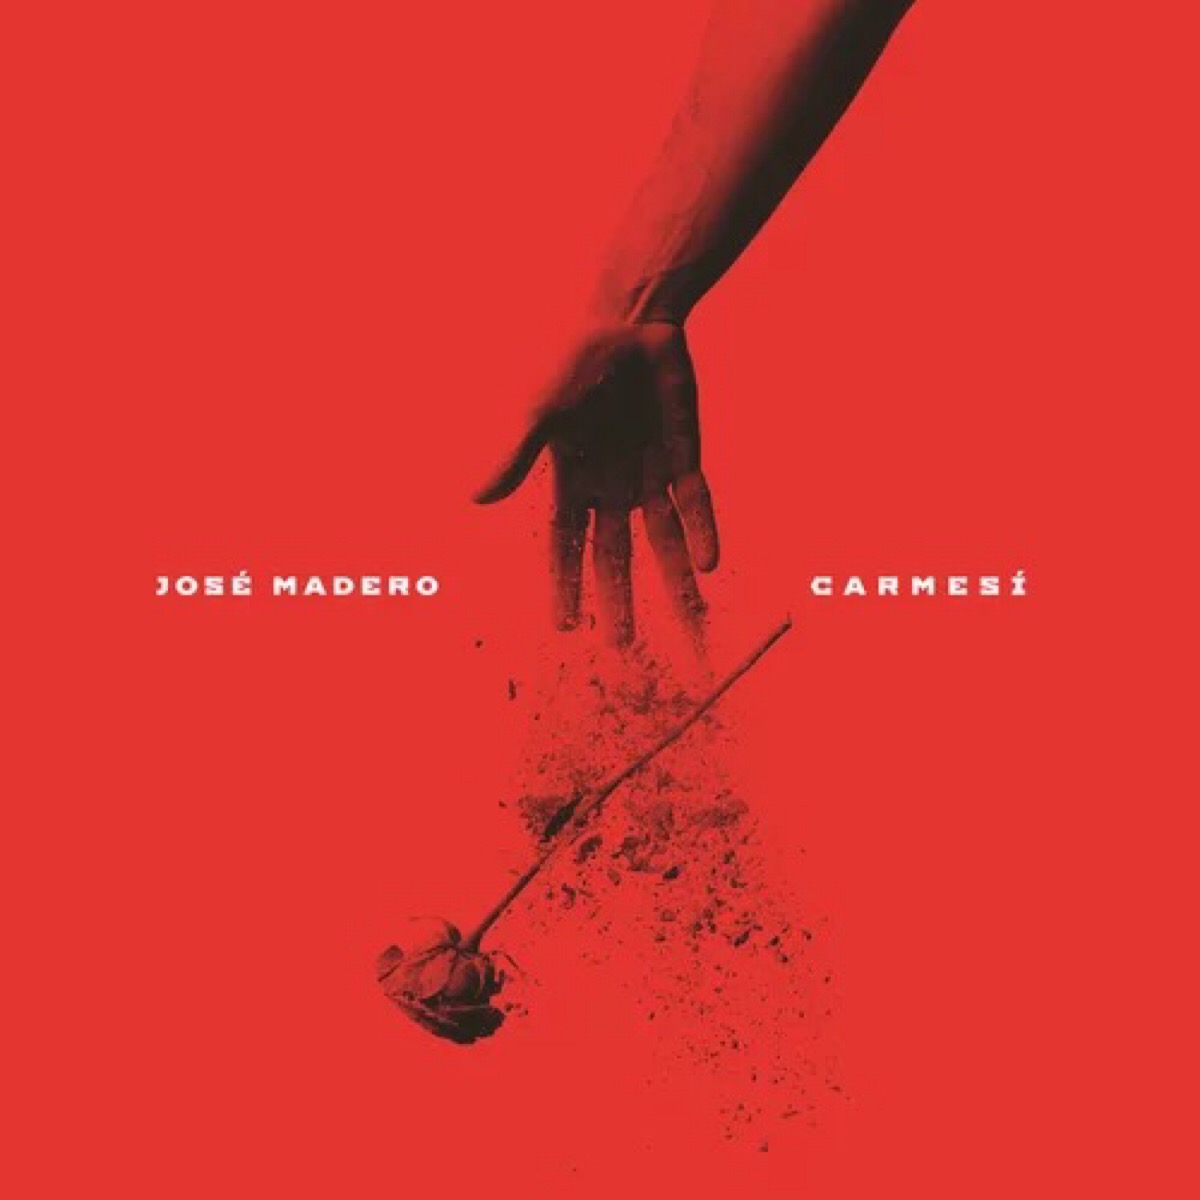 墨西哥摇滚歌手josé madero于2016年4月29日发布最新专辑《carmesí